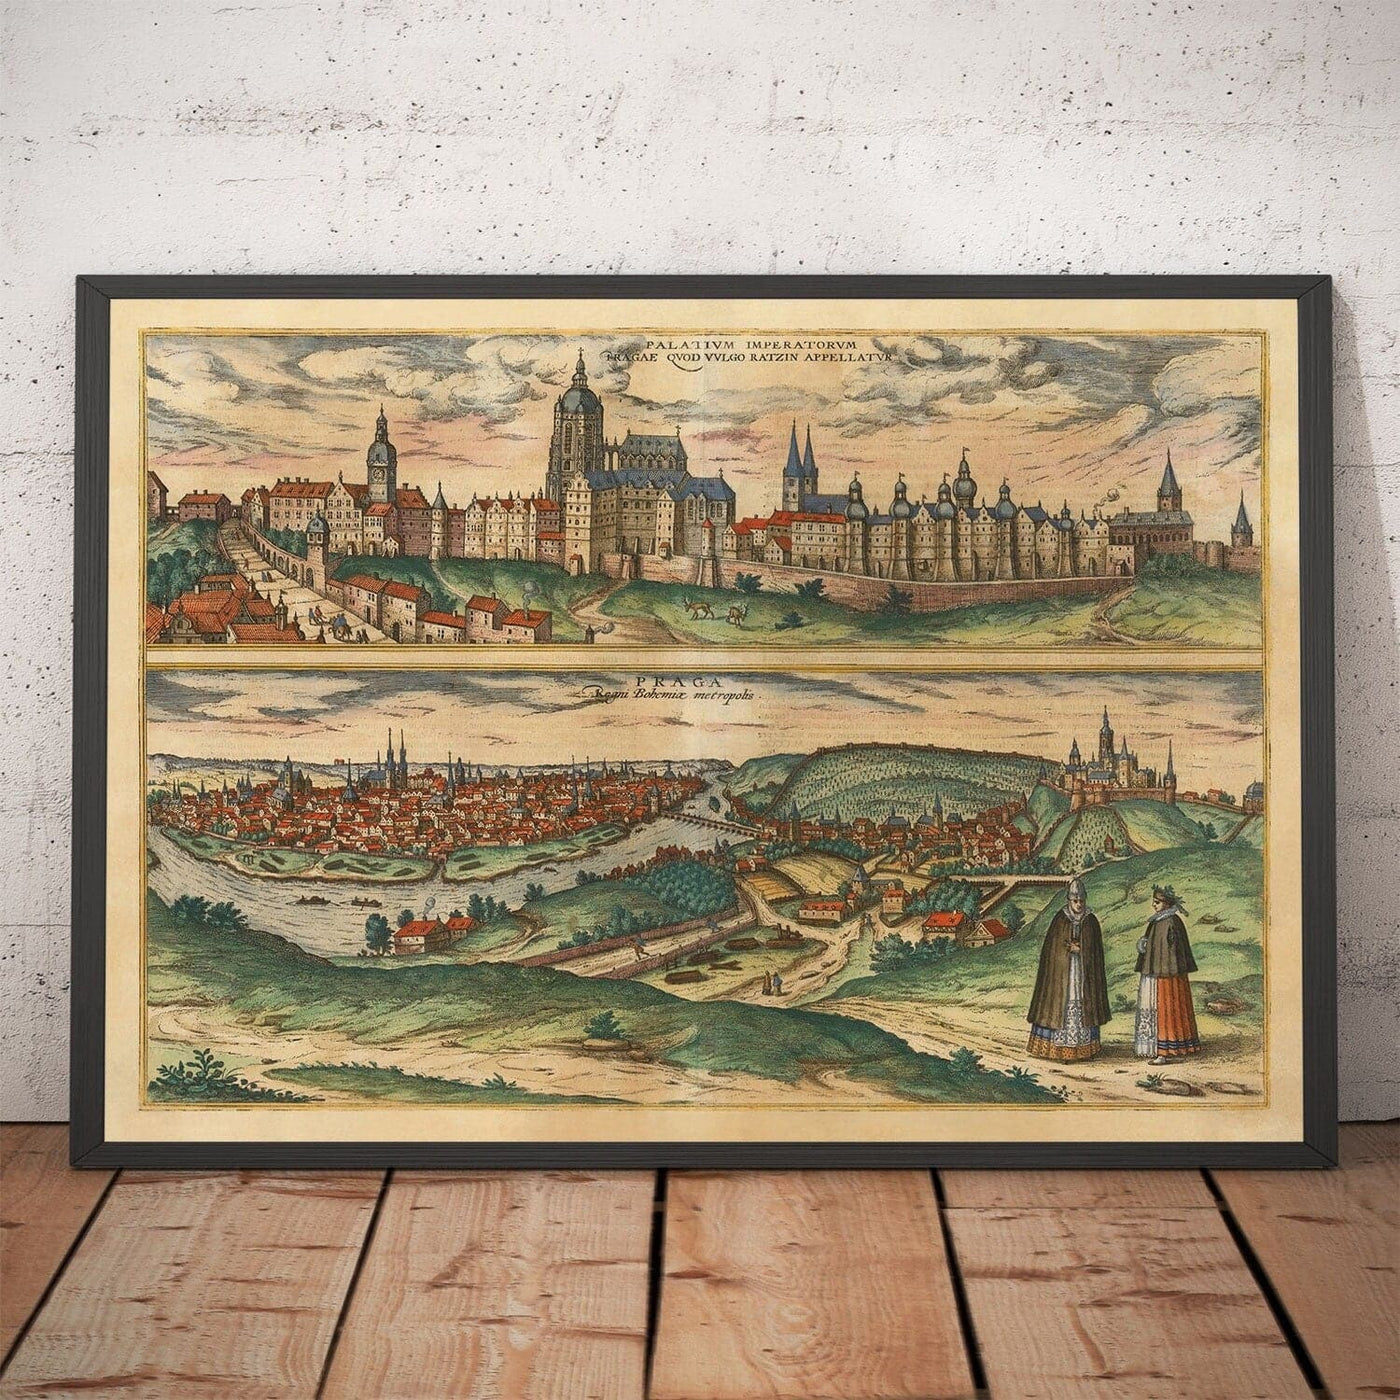 Alte Karte von Prag, Tschechien von Georg Braun, 1572 - Böhmen, Schloss, Vltava, Týn Teyn Church, Altstadt, Mala Strana